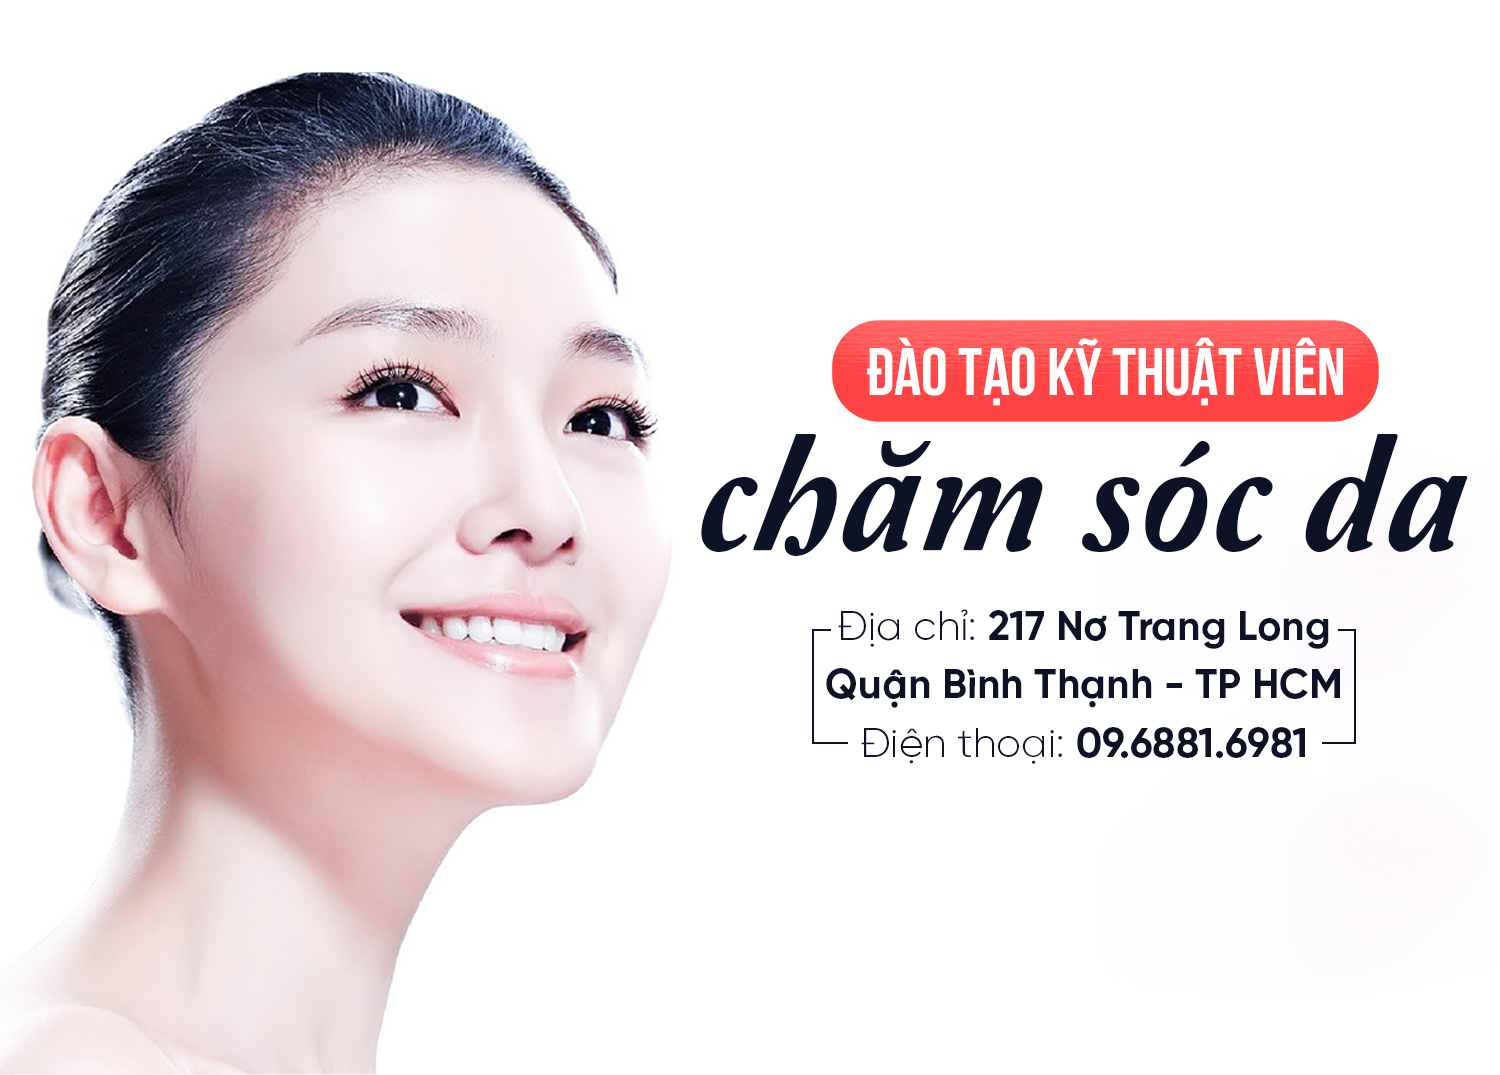 Bác sĩ Trường Dược Sài Gòn chia sẻ nguyên nhân và cách trị chàm da đầu